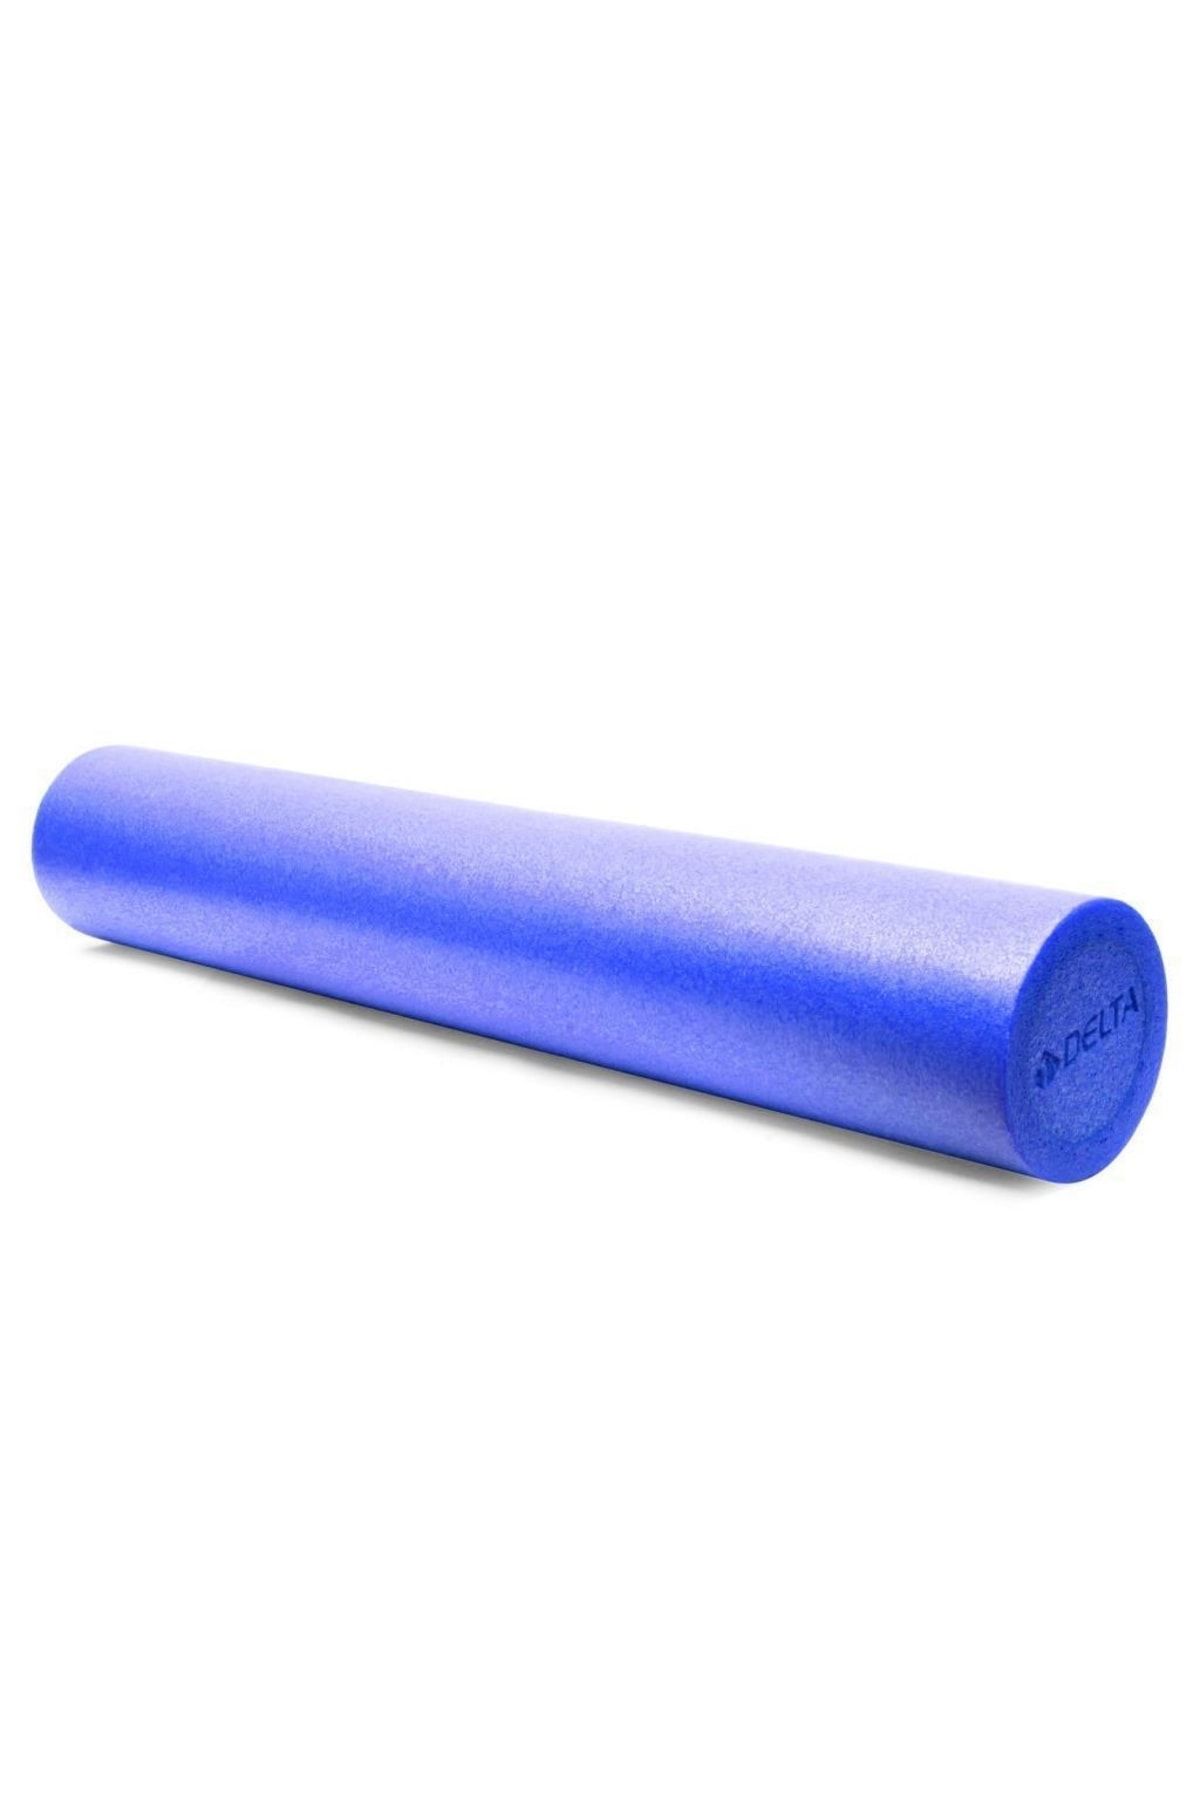 Delta 90 cm Uzunluk 15 cm Çap Yüksek Yoğunlukta Orta Sert Uzun Foam Roller Pilates Masaj Rulosu